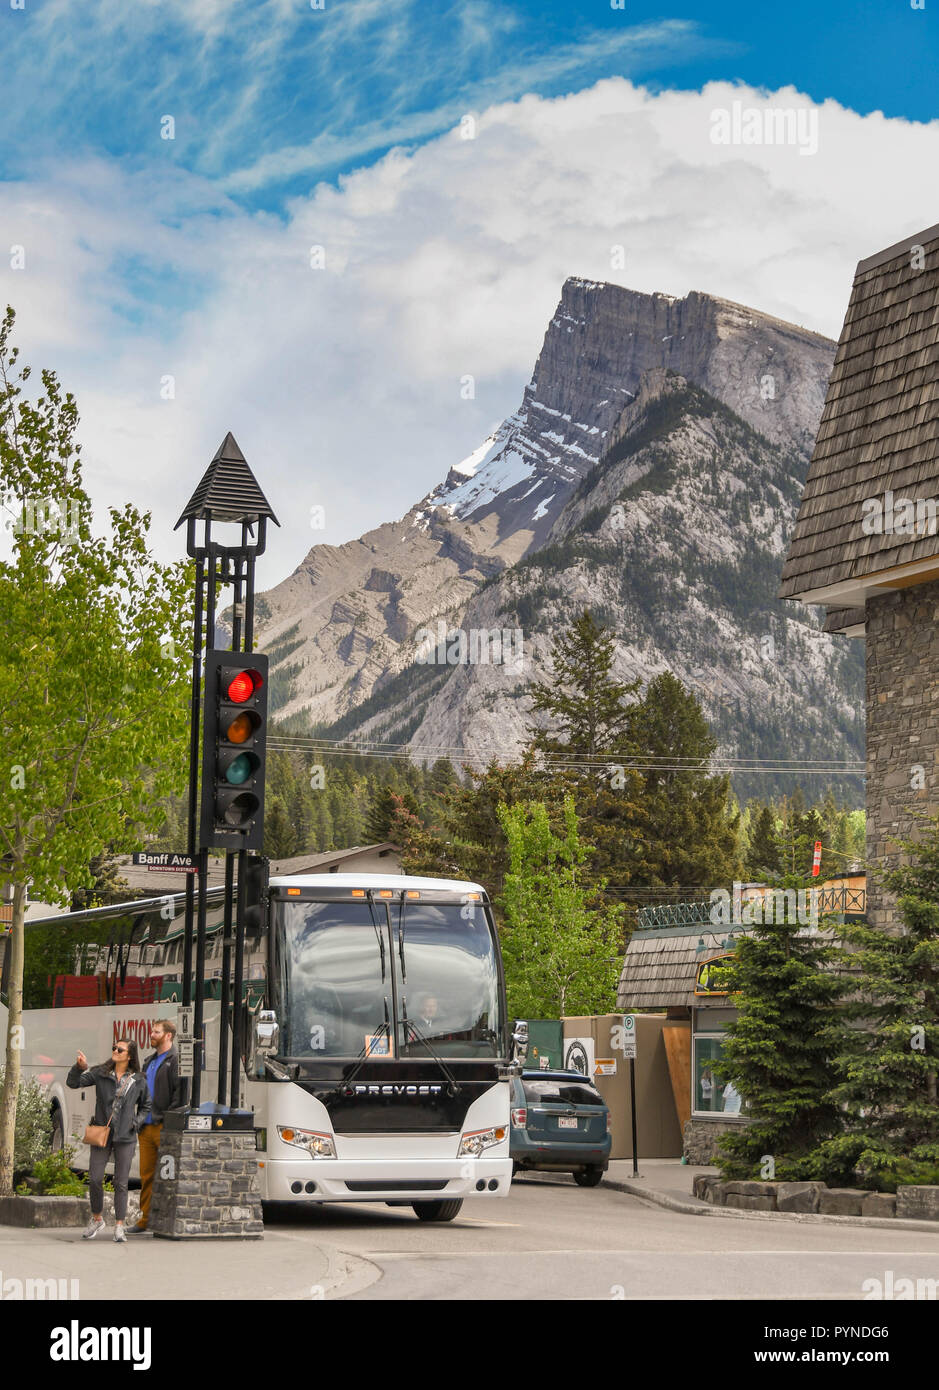 BANFF, AB, Kanada - Juni 2018: Ausflug mit dem Bus in einer Seitenstraße in Banff Stadtzentrum mit hoher Berg im Hintergrund geparkt. Stockfoto